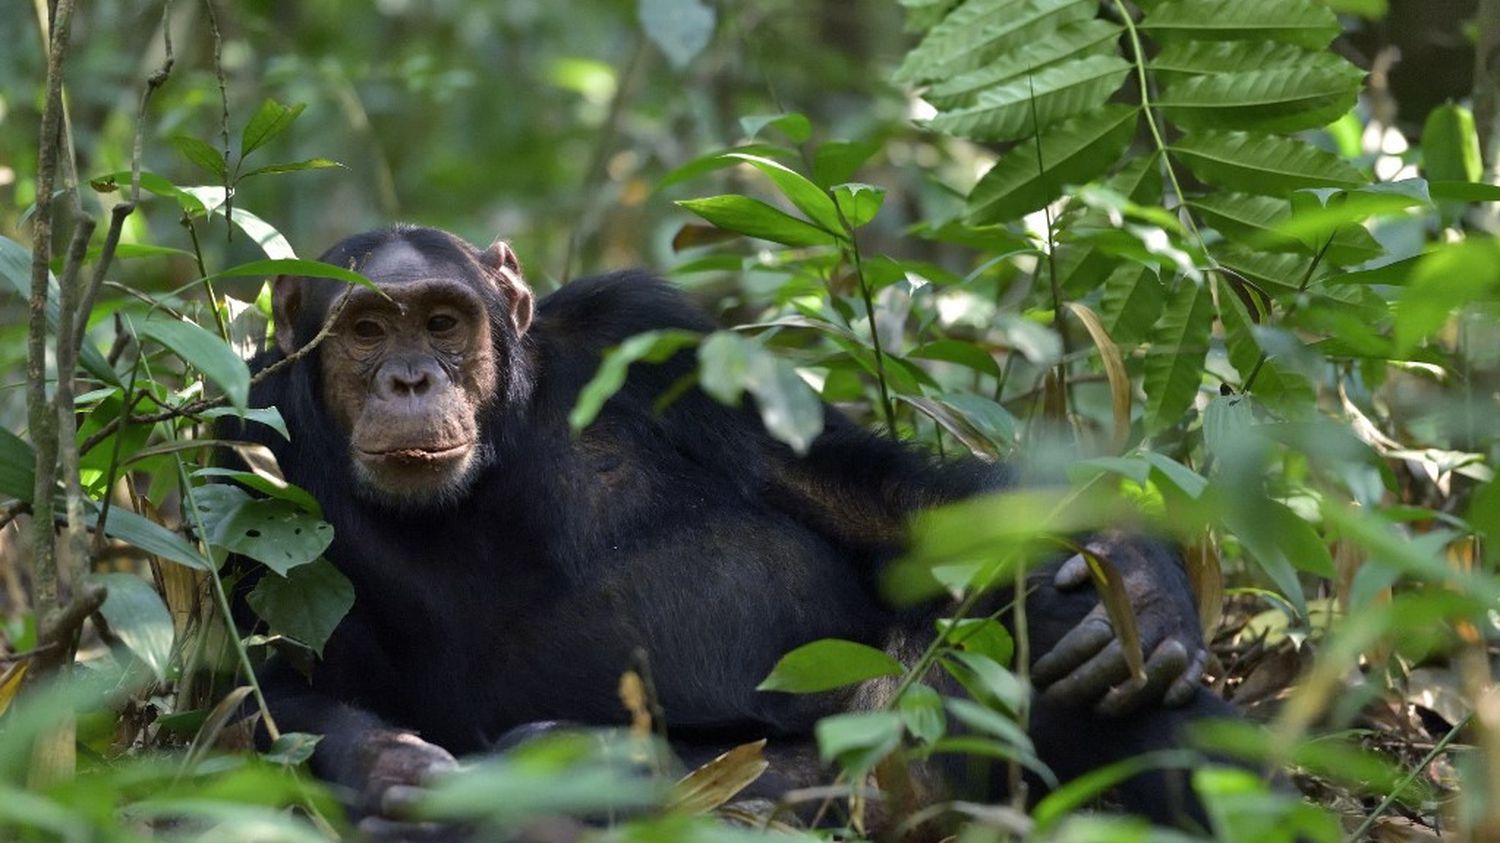 Animaux : à la découverte de chimpanzés en milieu naturel